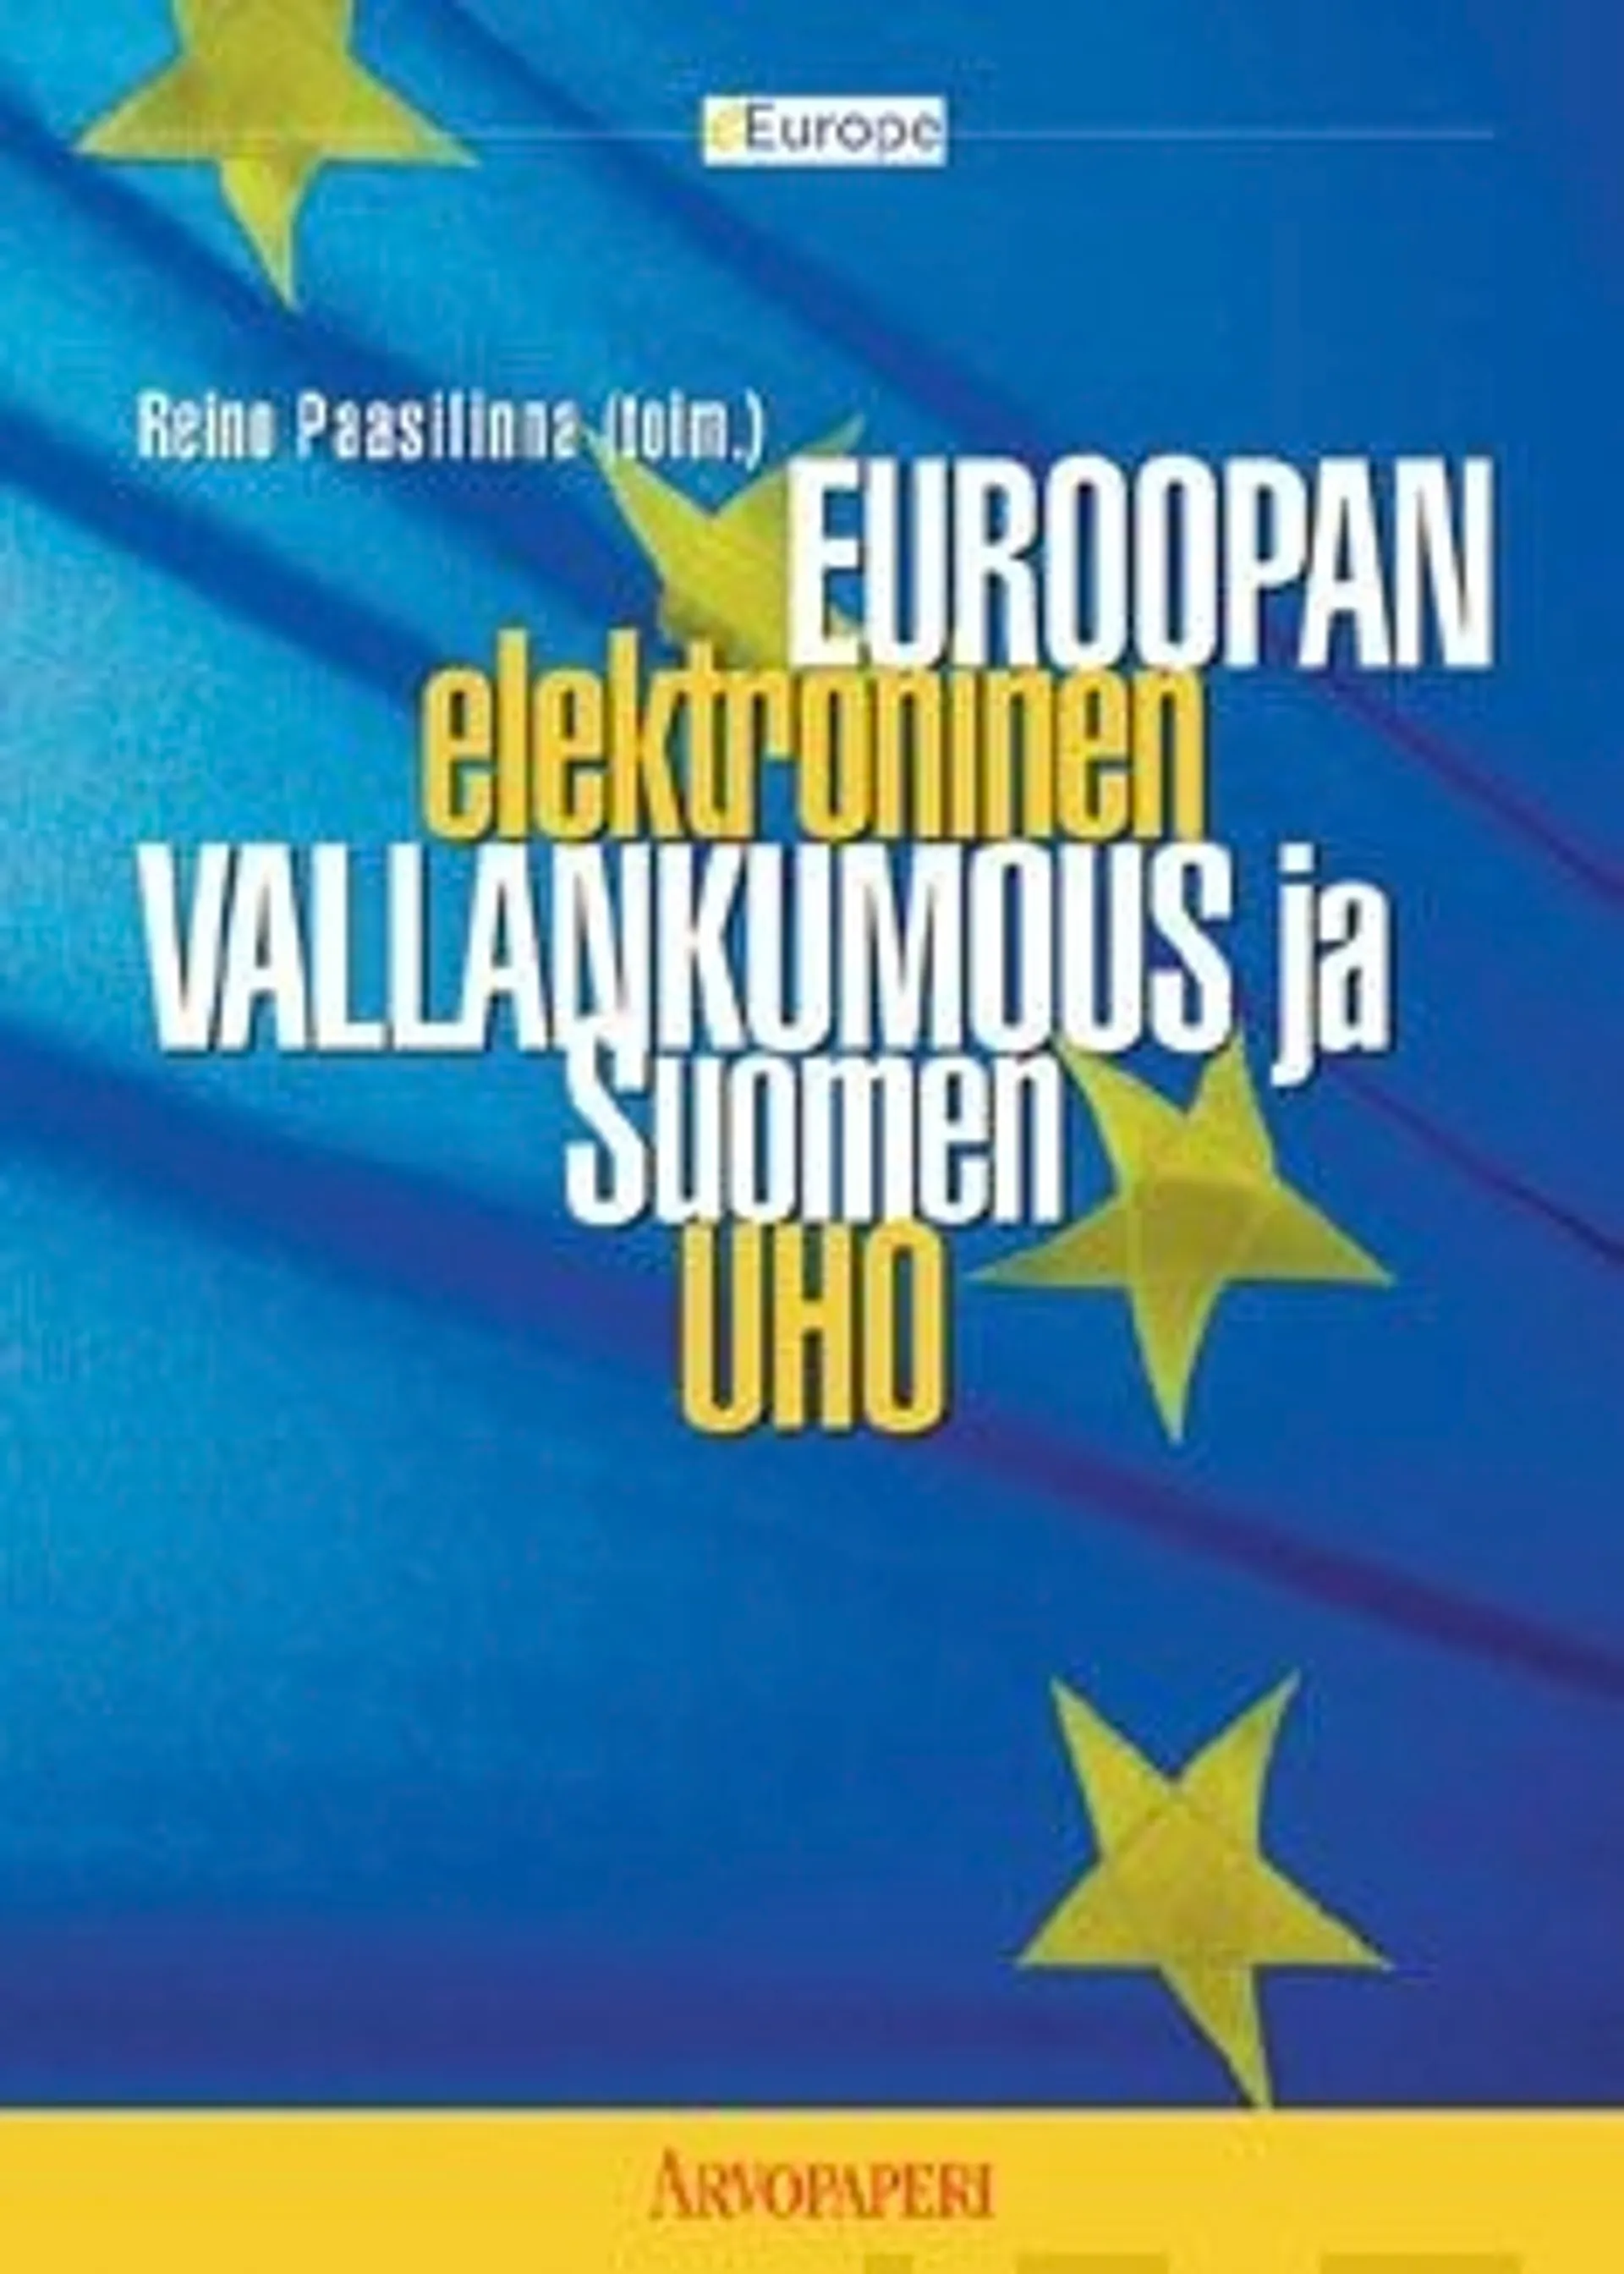 Euroopan elektroninen vallankumous ja Suomen uho